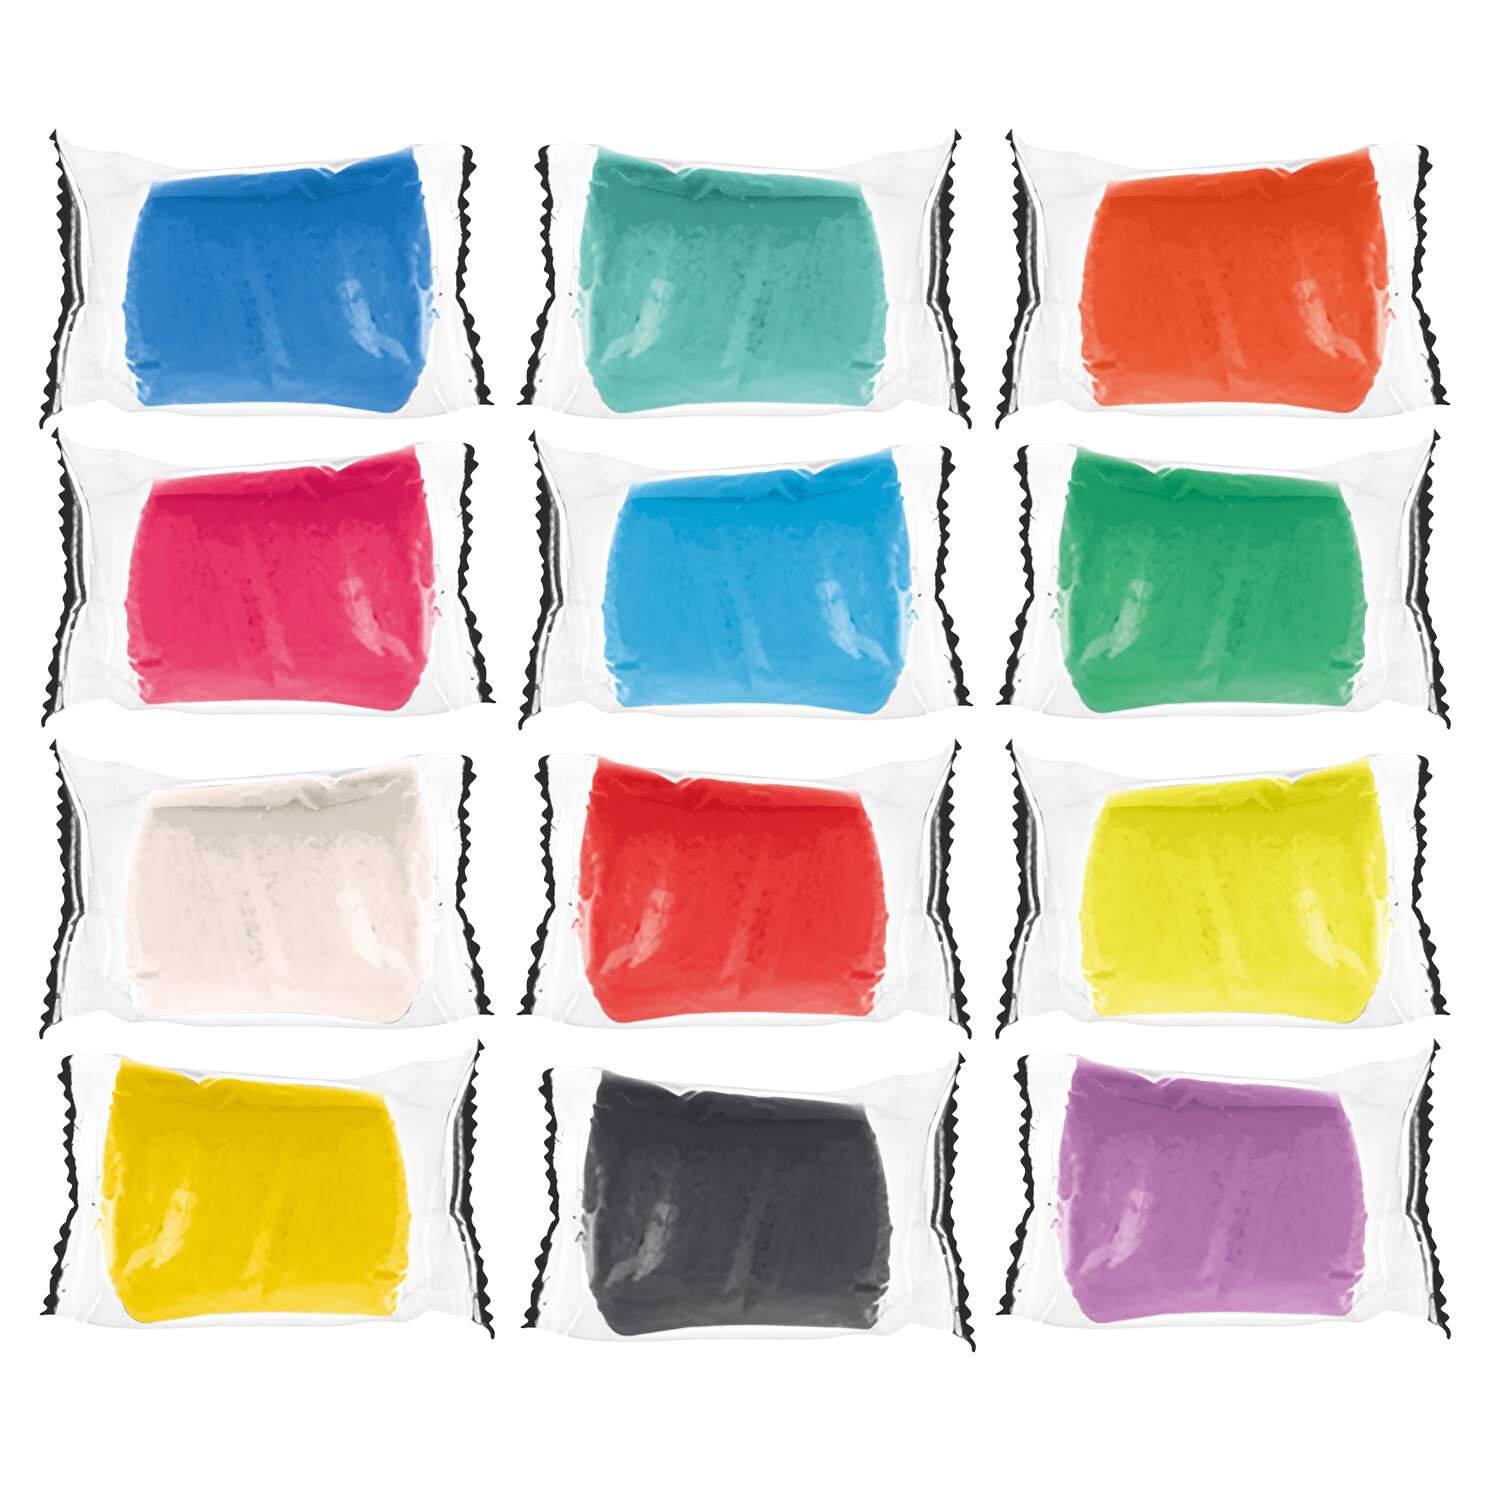 Пластилин Brauberg тесто для лепки набор 12 цветов с инструментами - фото 4